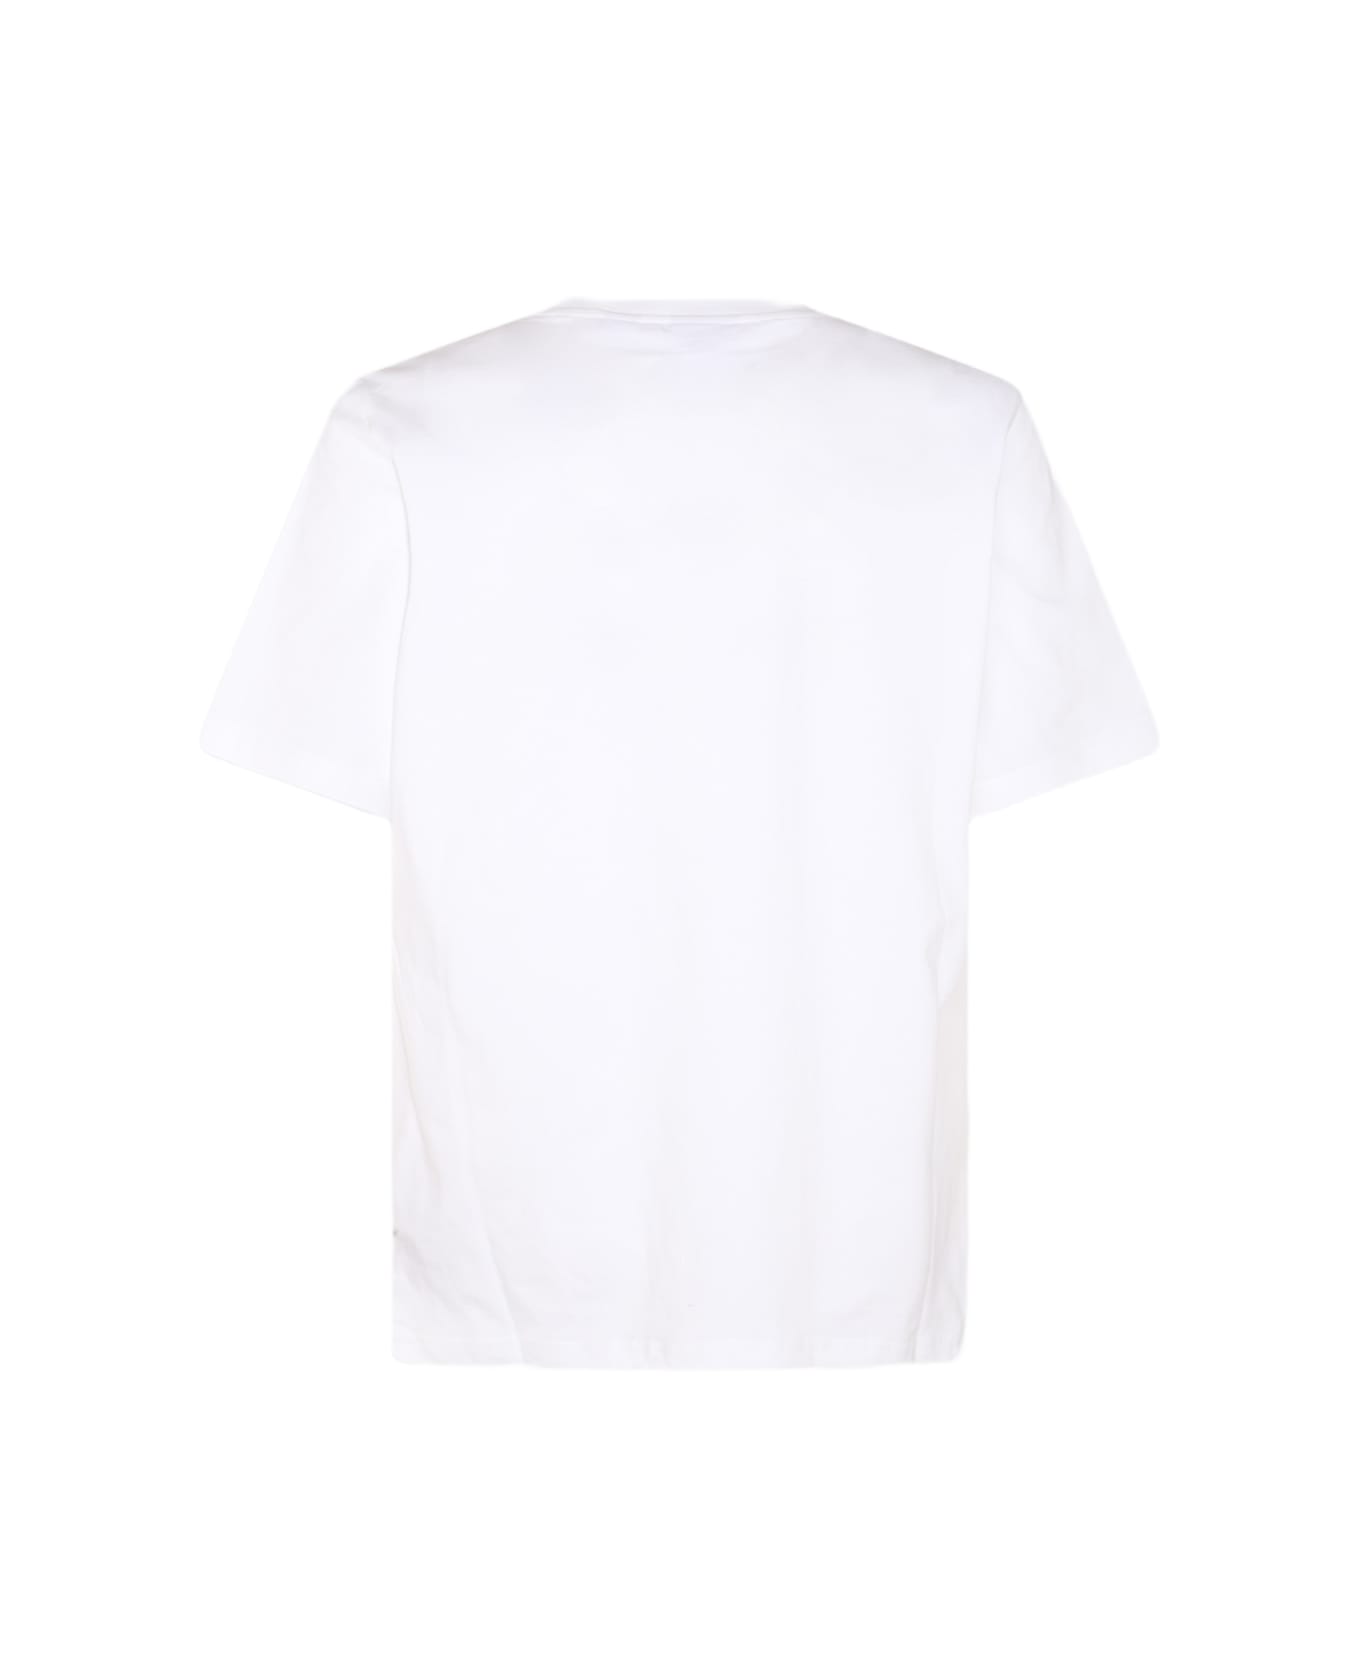 Daily Paper White Cotton T-shirt - White シャツ